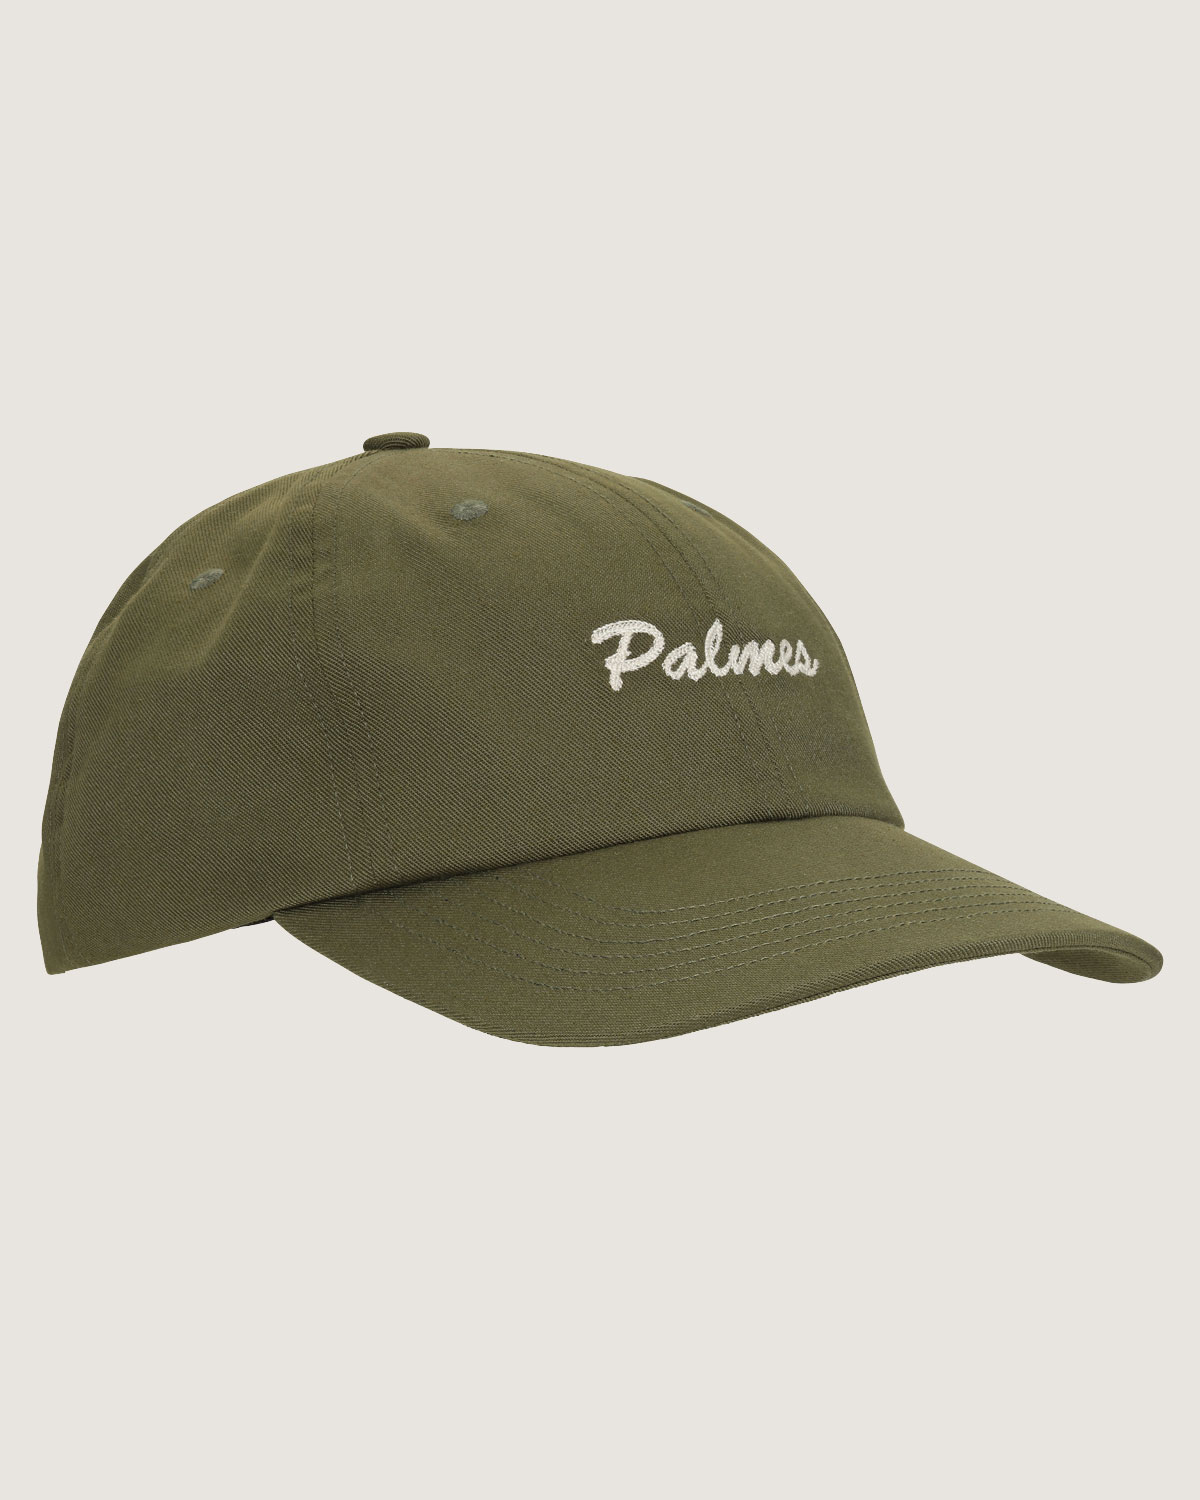 Hats — Palmes